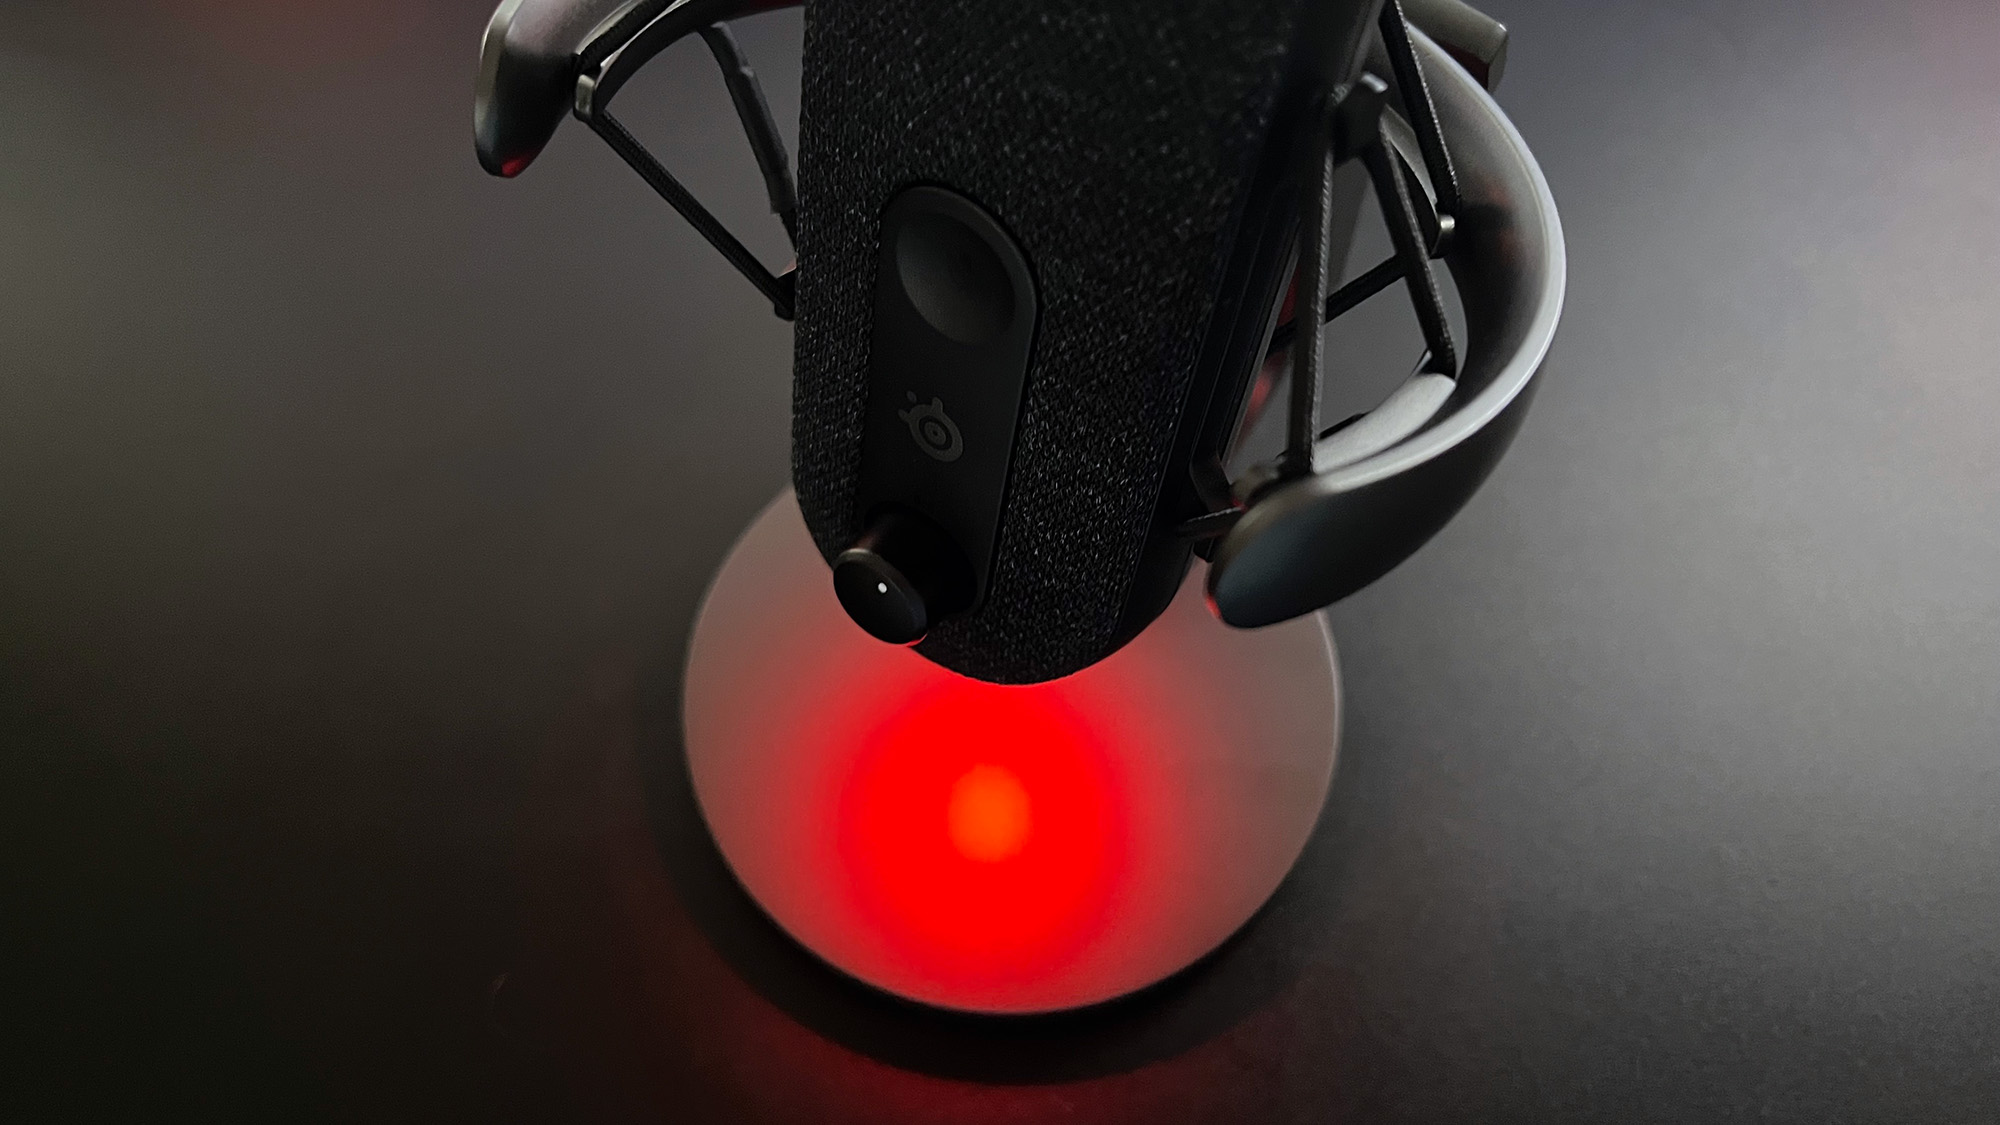 Image de revue de SteelSeries Alias ​​montrant l'éclairage rouge au bas du micro